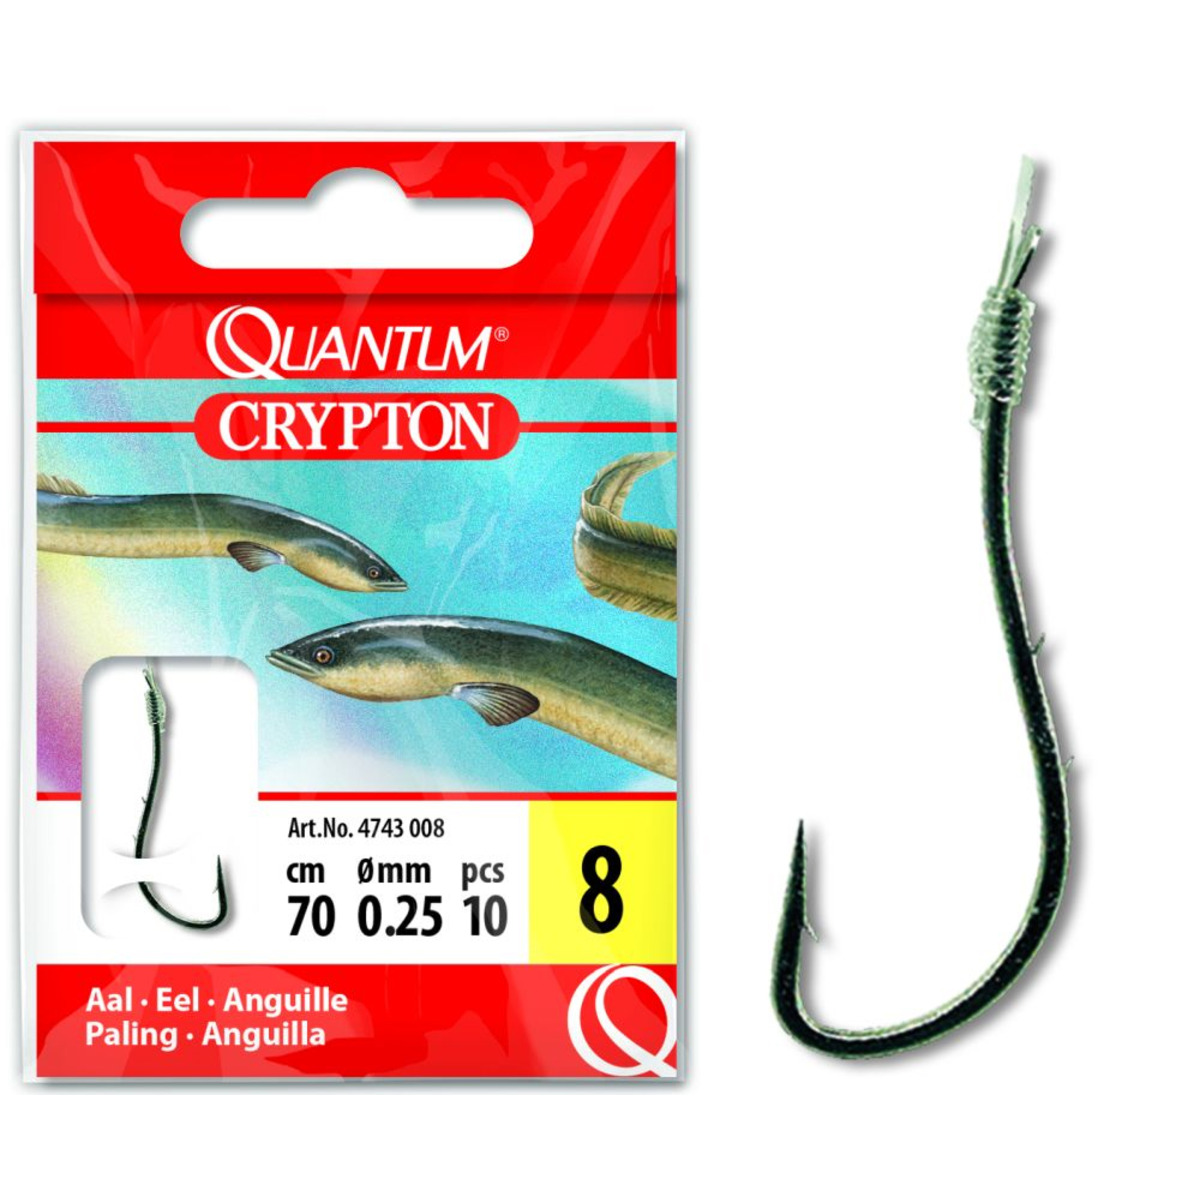 Quantum Crypton Eel Hook-to-nylon - 8